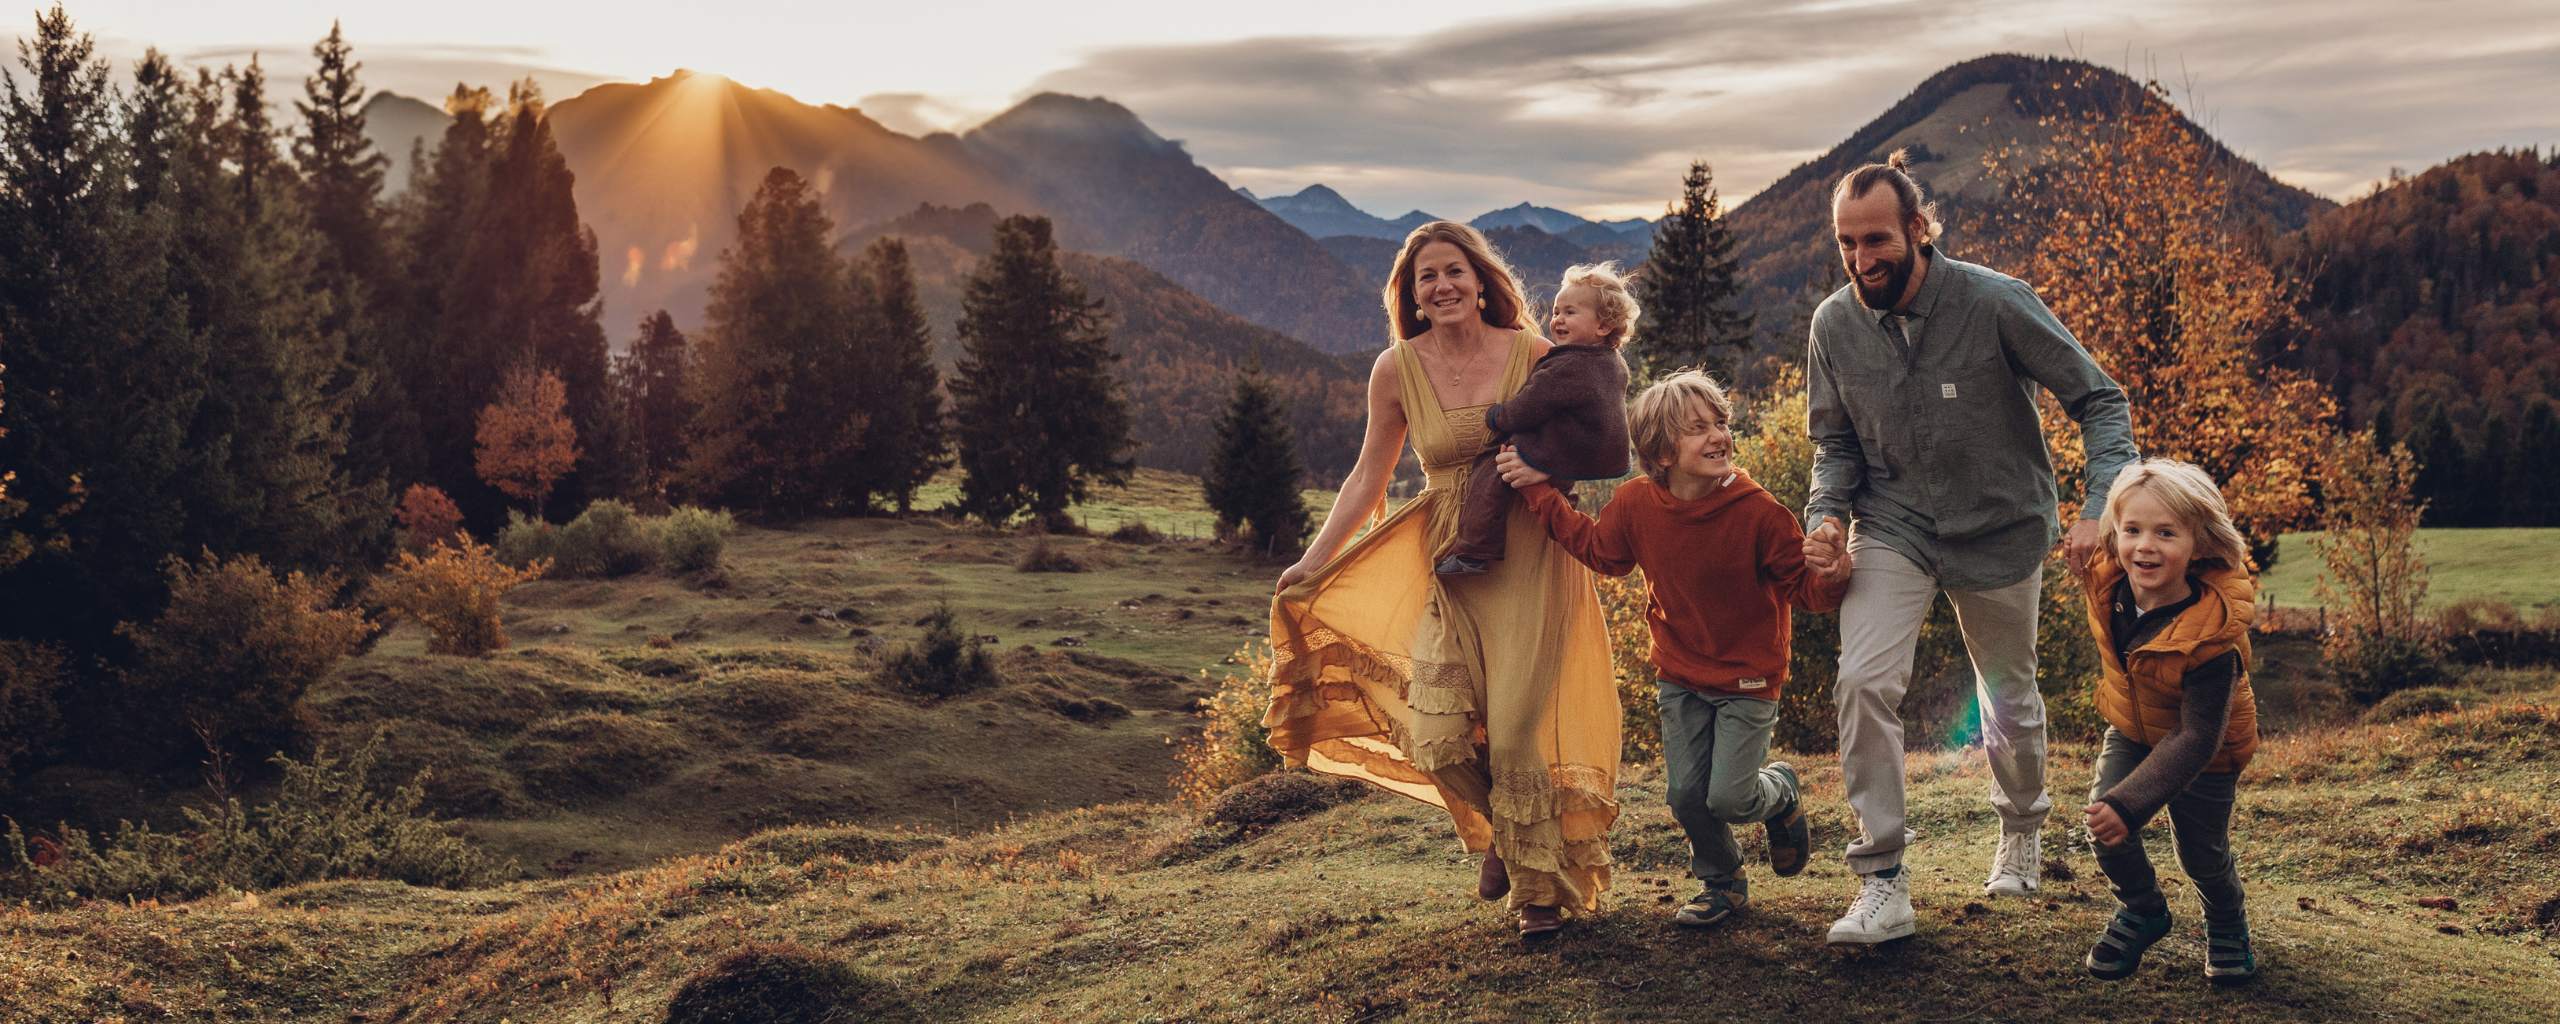 Familienbilder in den Bergen, Bayern, Alpen, Chiemgau